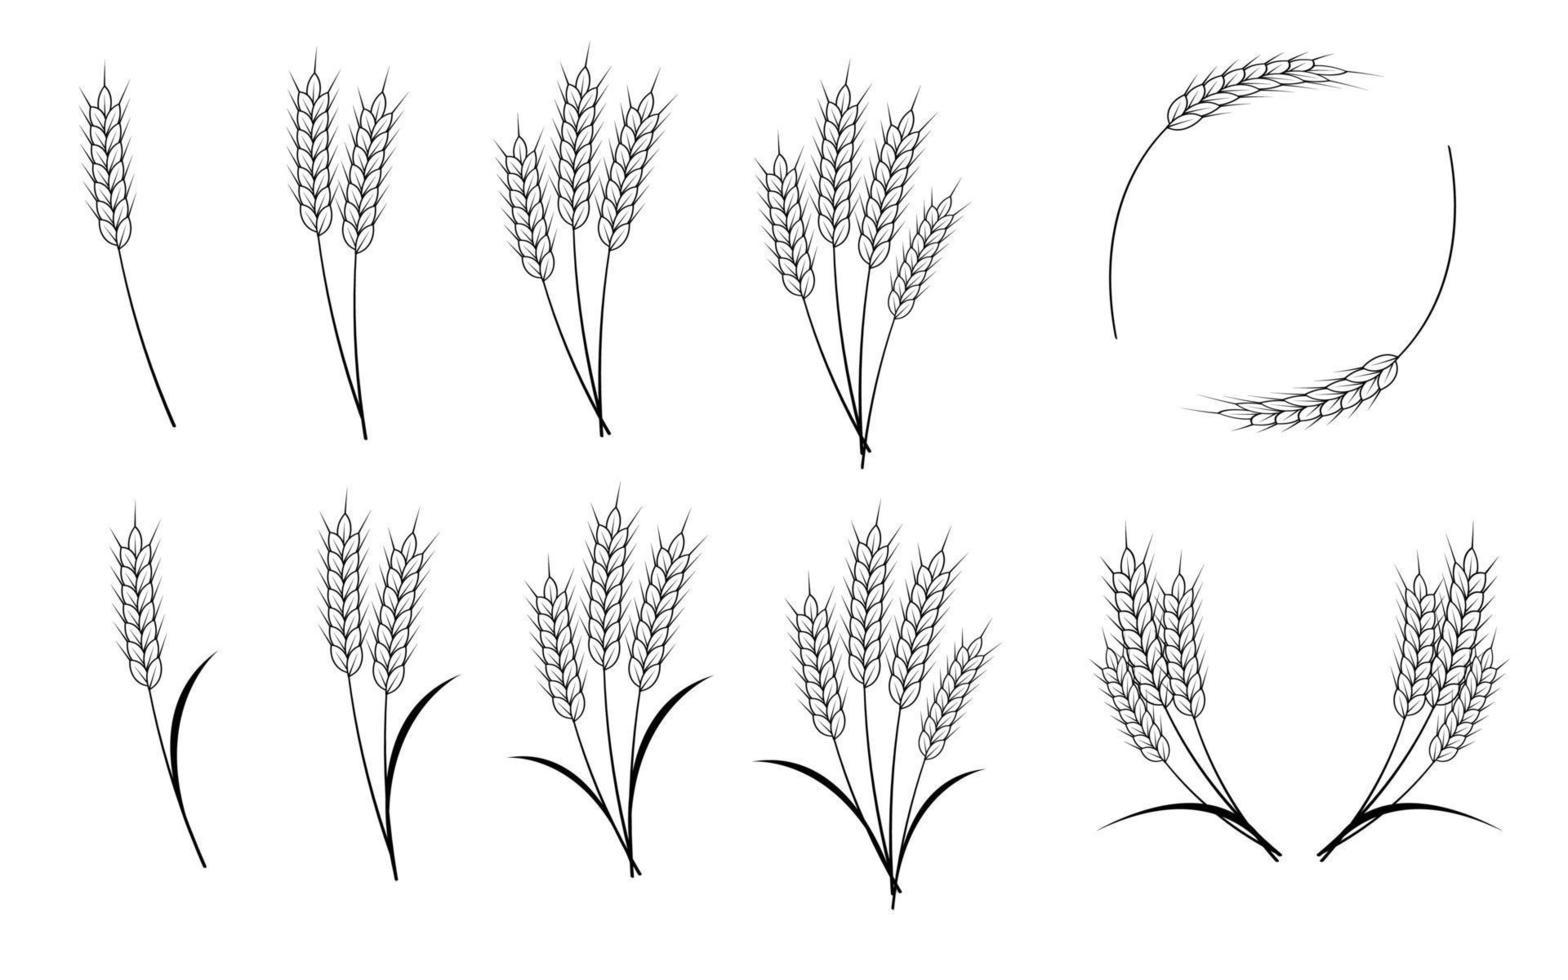 épis de blé, d'orge, d'avoine ou de riz isolés sur fond blanc. illustration vectorielle vecteur